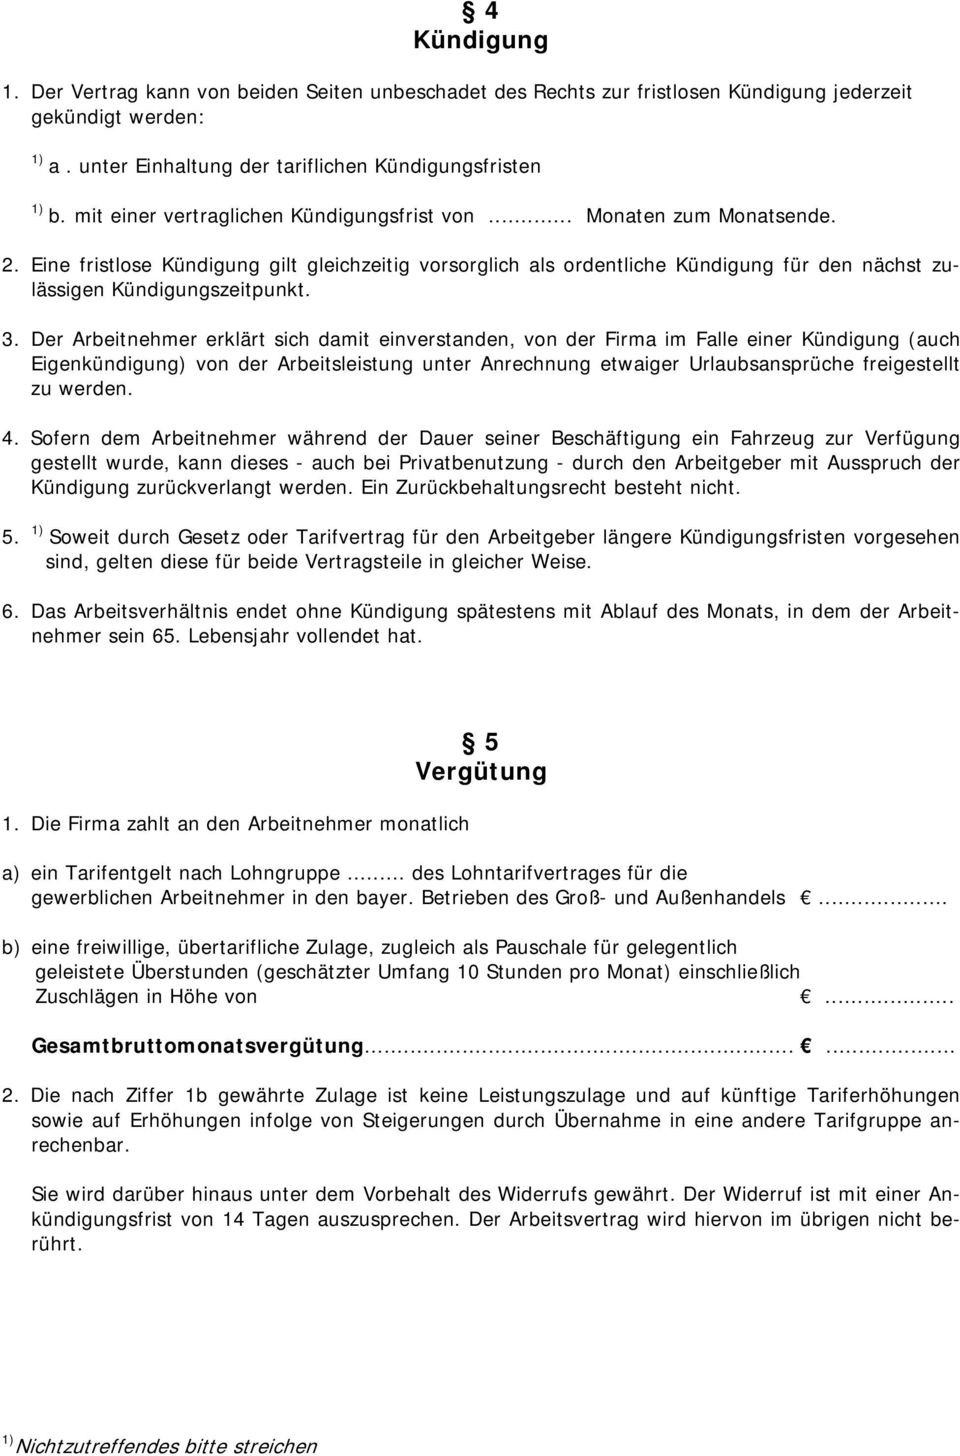 Arbeitsvertrag Für Gewerbliche Arbeitnehmer Im Handwerk
 Arbeitsvertrag für gewerbliche Arbeitnehmer PDF